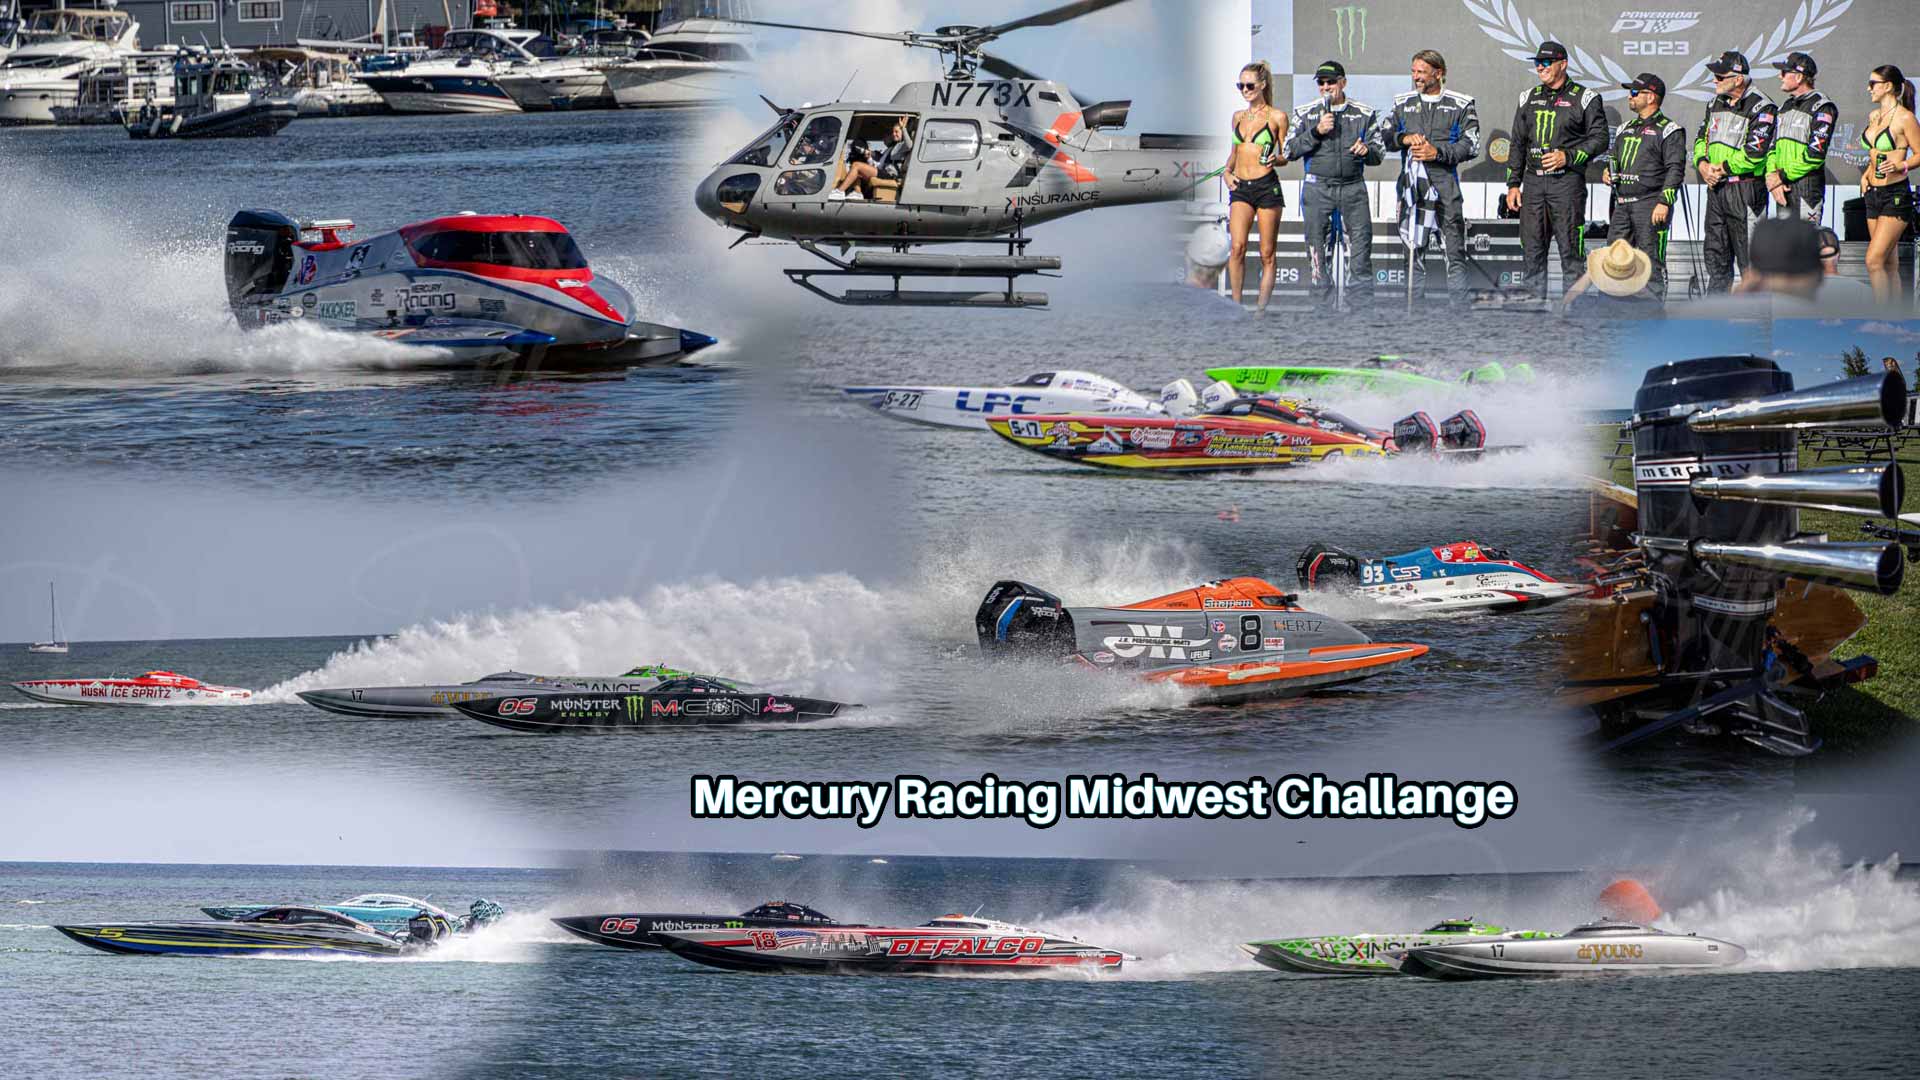 Mercury Racing Midwest Challenge in Sheboygan Wisconsin